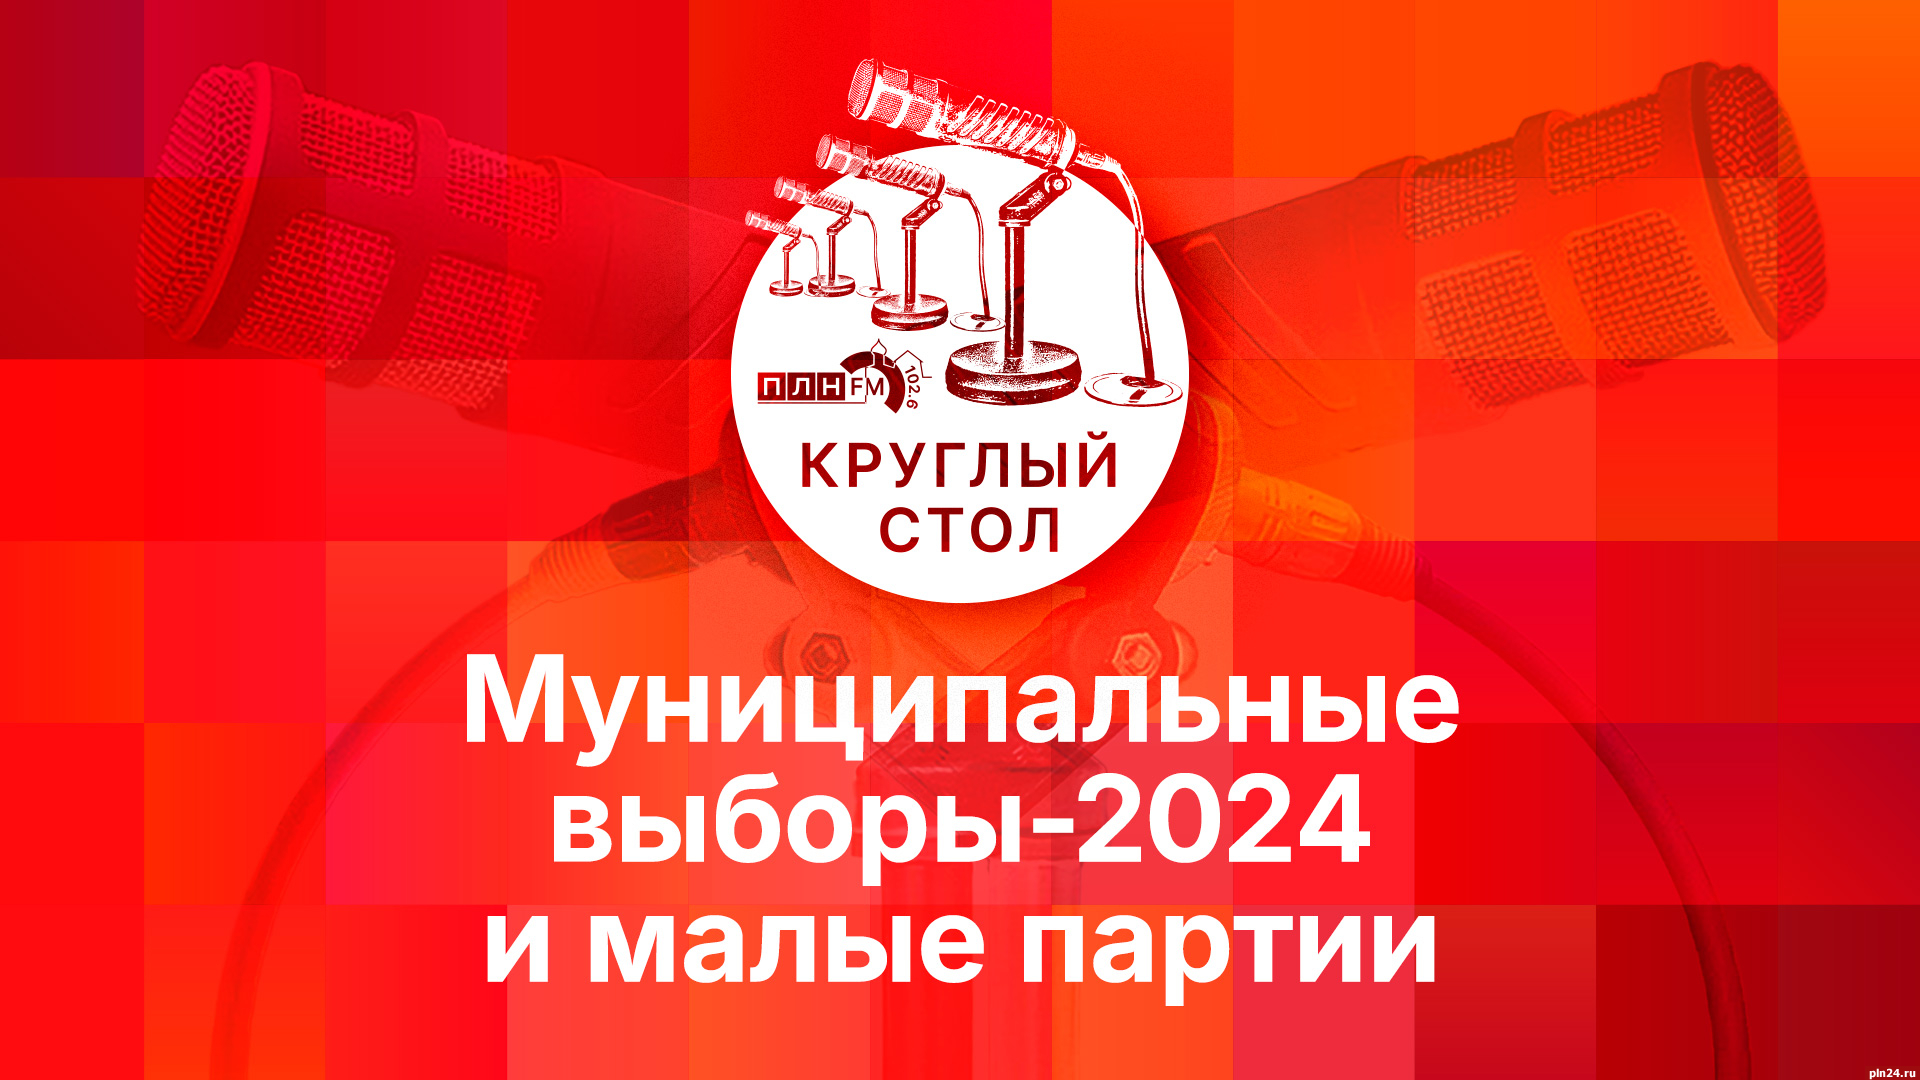 Начинается видеотрансляция круглого стола о муниципальных выборах-2024 и малых партиях